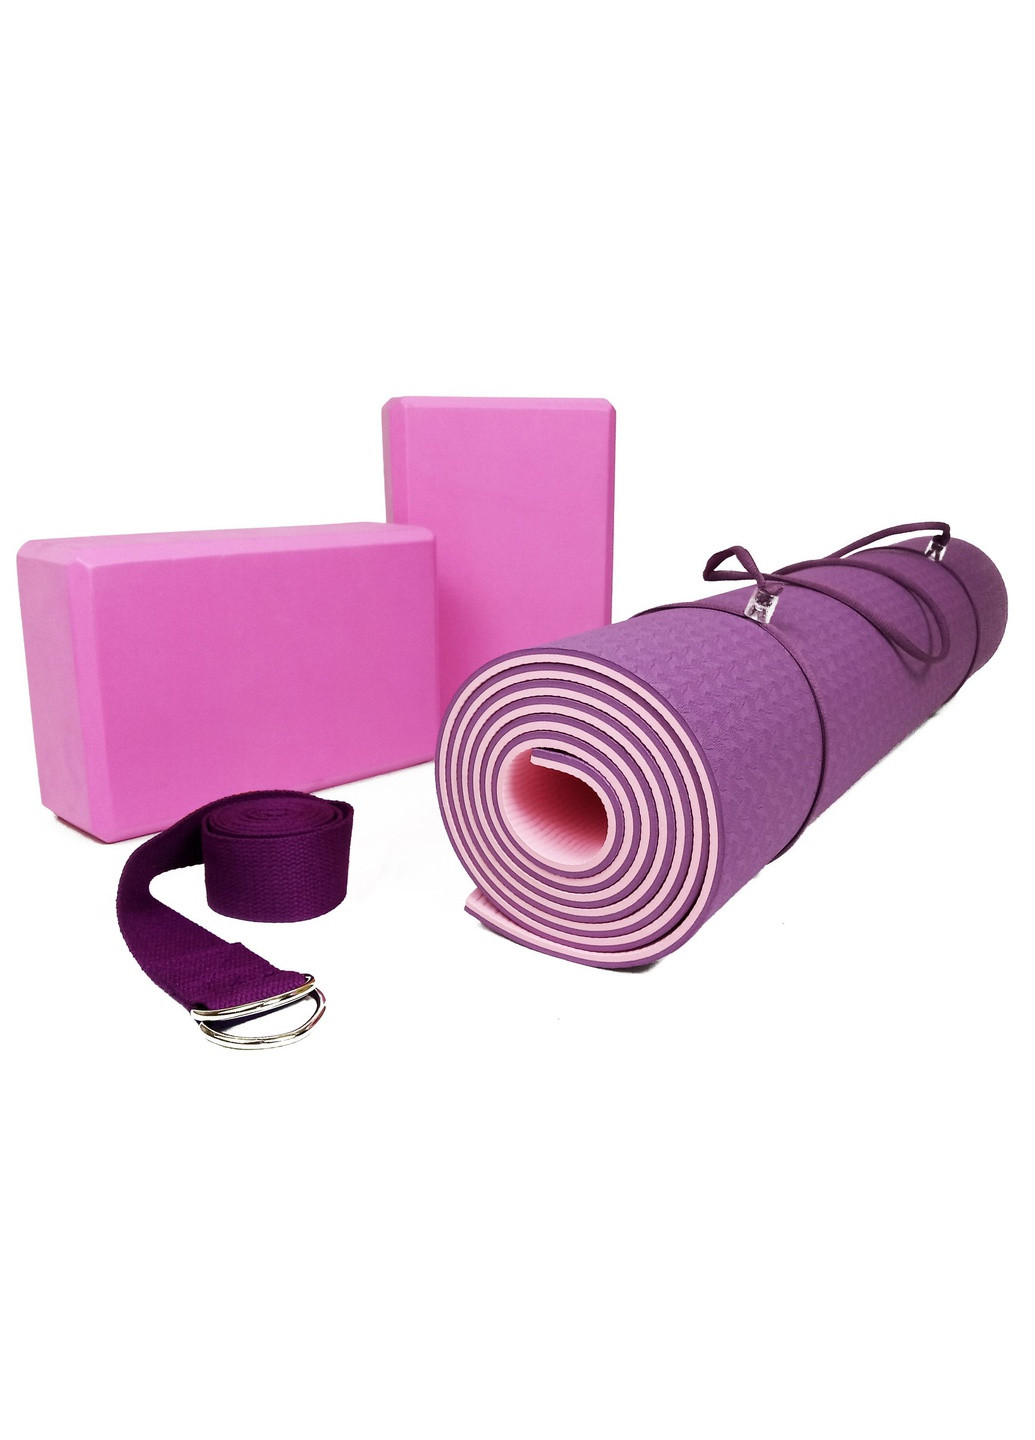 Набор для йоги PRO (EF-YPVP) - коврик для йоги (каремат, йогамат для фитнеса), два блока (кирпича) и ремень (лямка) EasyFit (241229831)